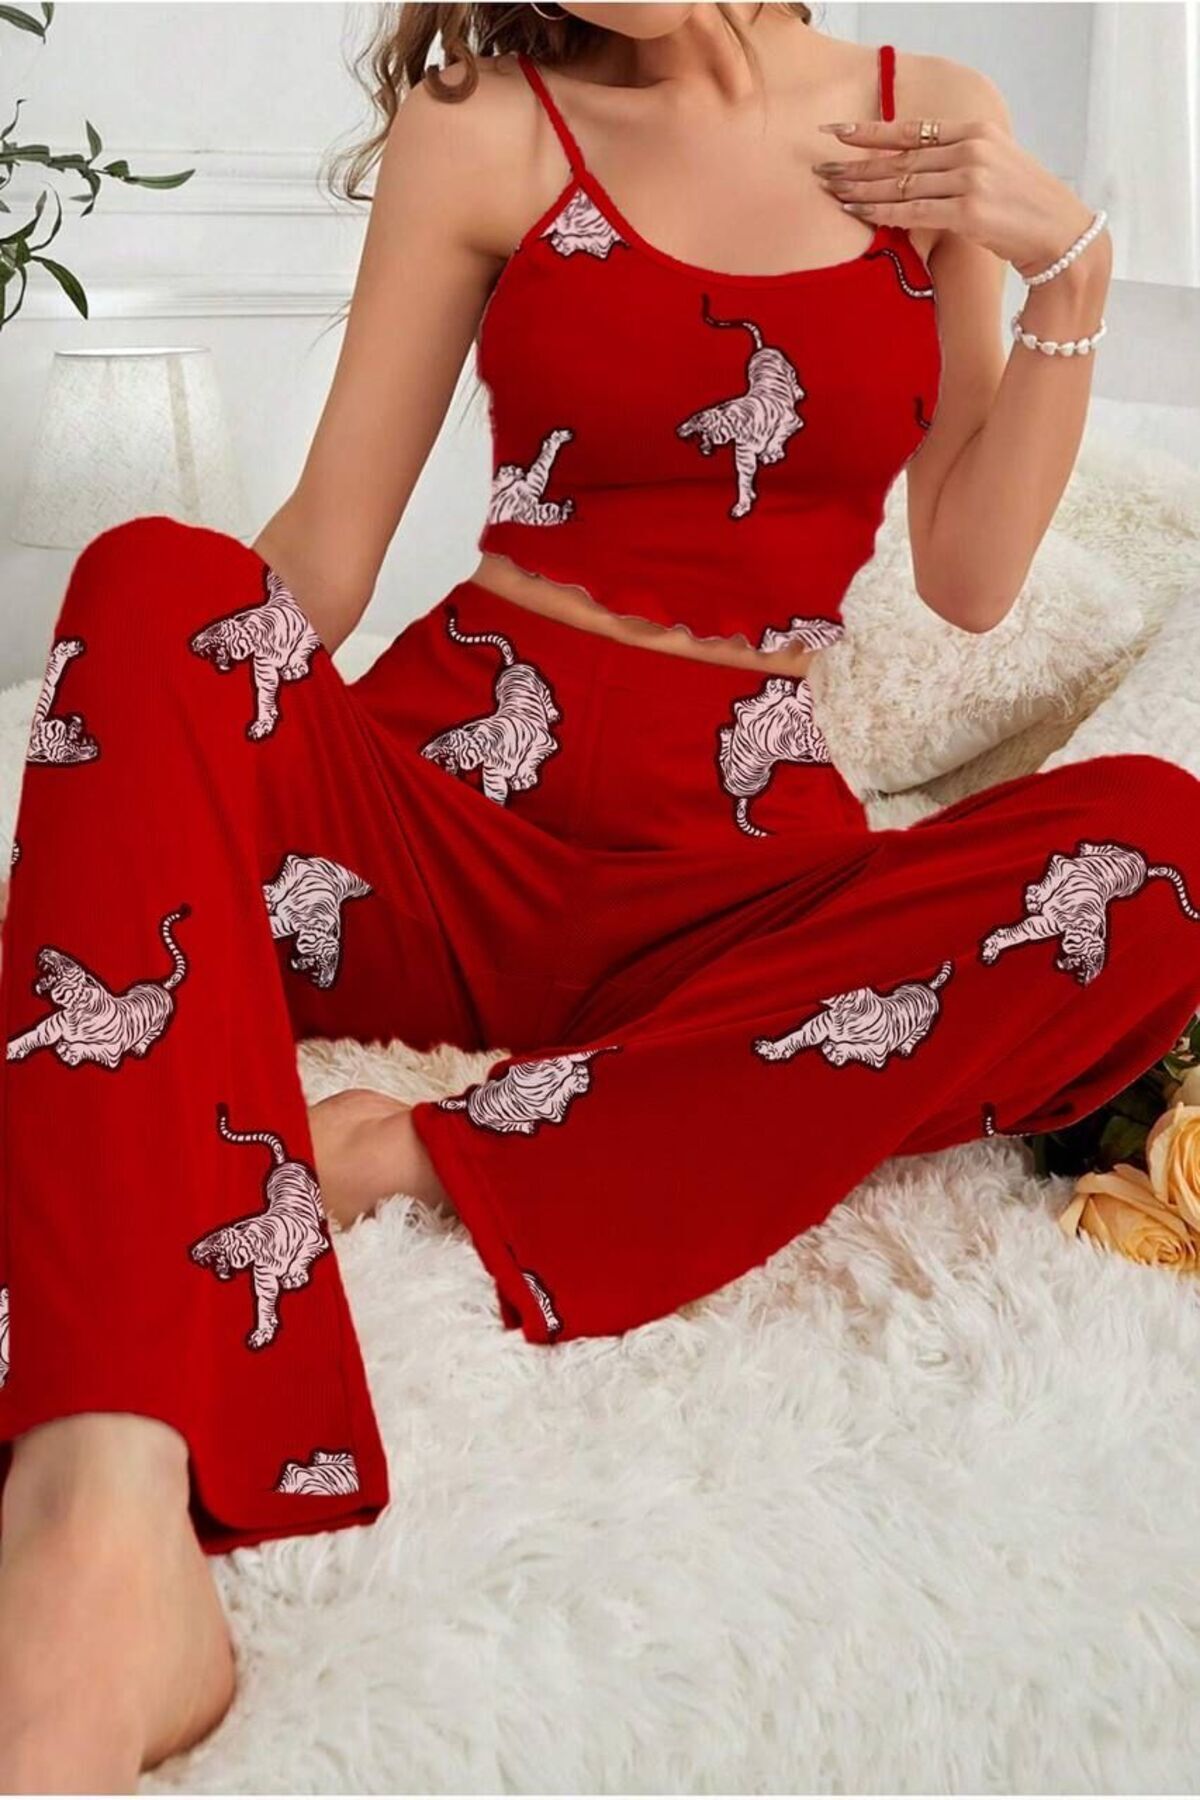 Cesur Kadın Askılı Uzun Pijama Takımı lırmızı kaplan